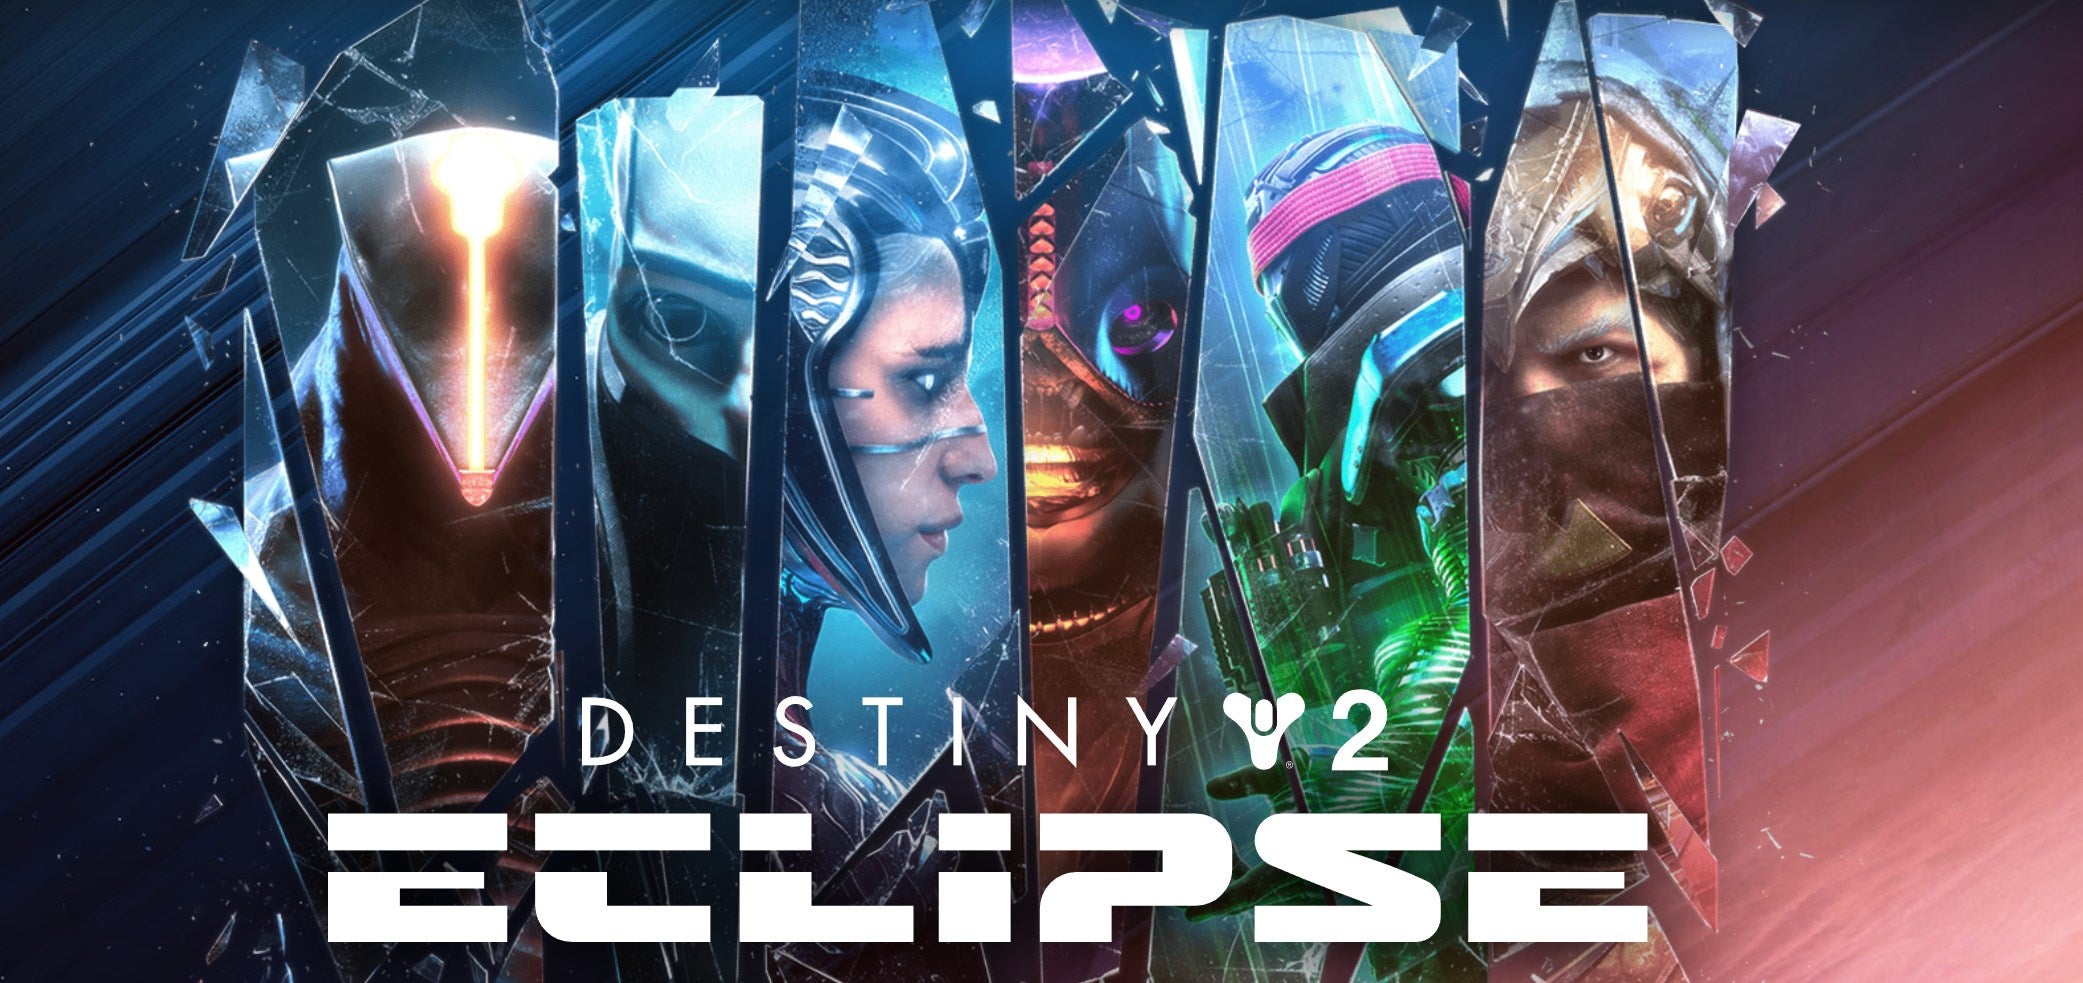 Imagen para Bungie detalla la próxima expansión de Destiny 2: Eclipse